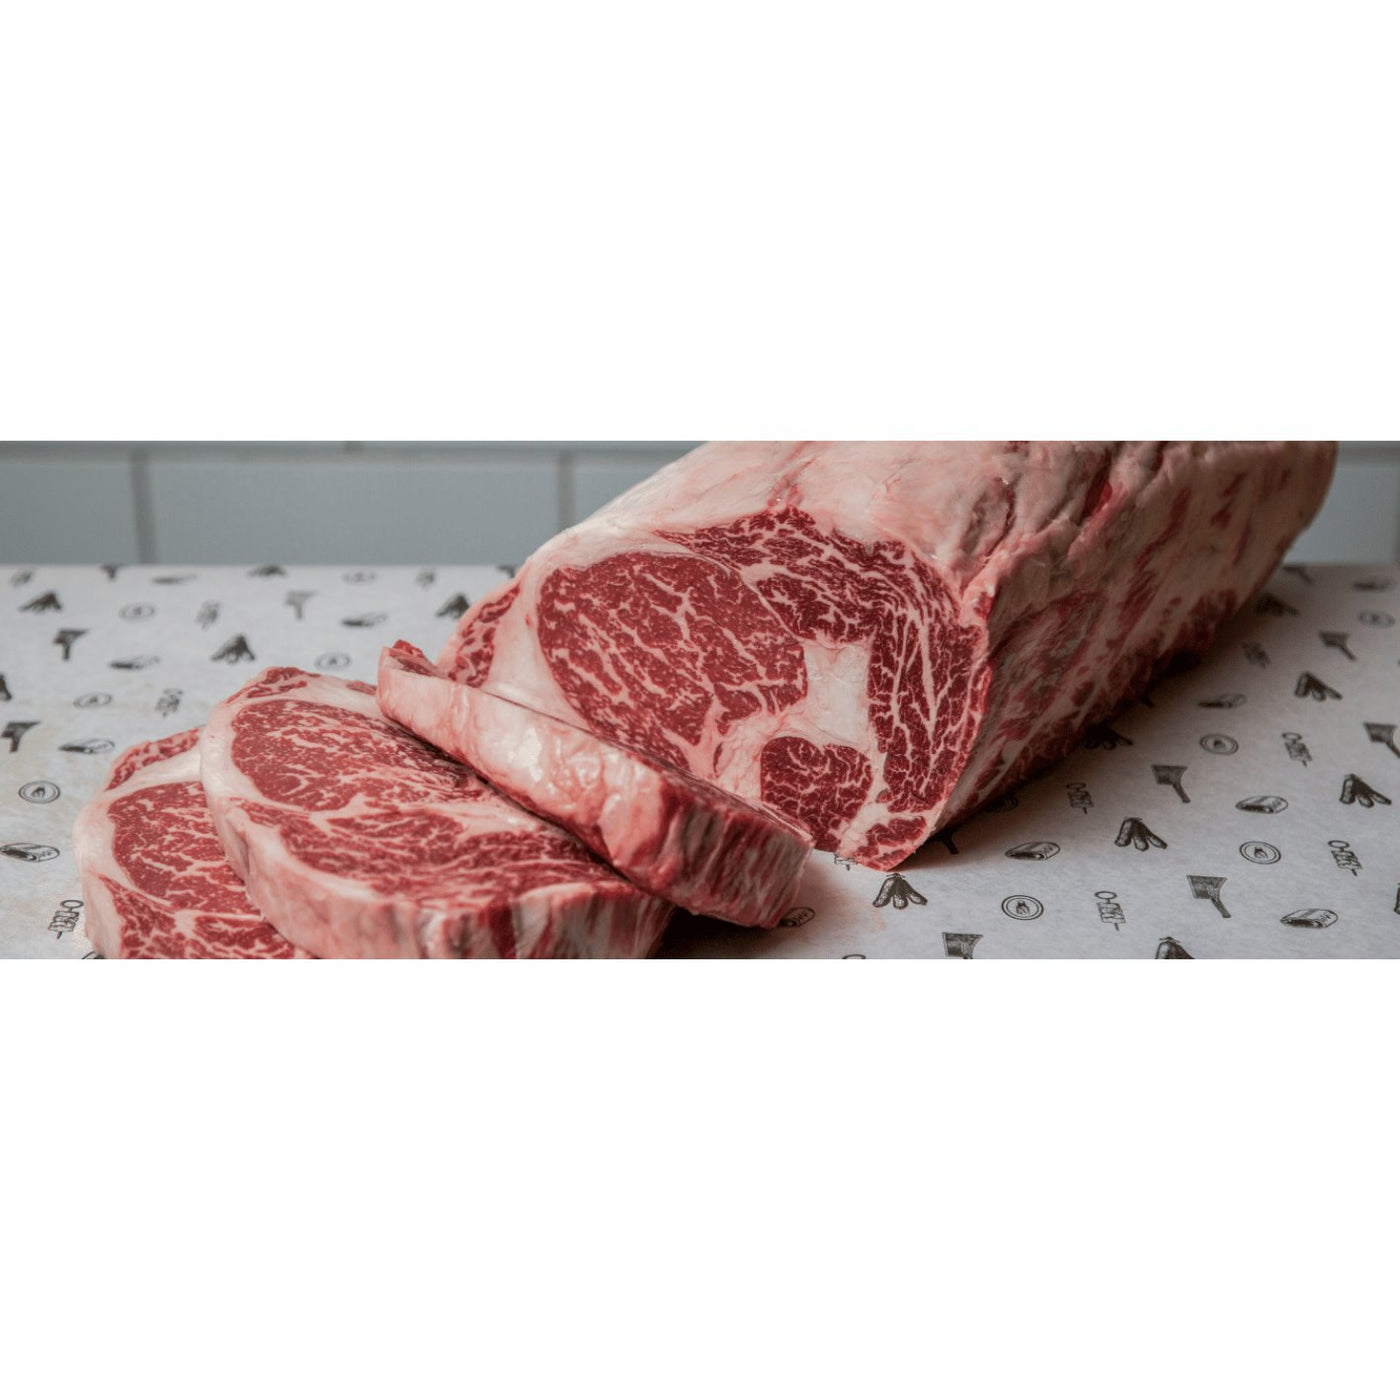 Stockyard Kiwami Wagyu Beef MB9+ Rib Fillet | $185.99kg